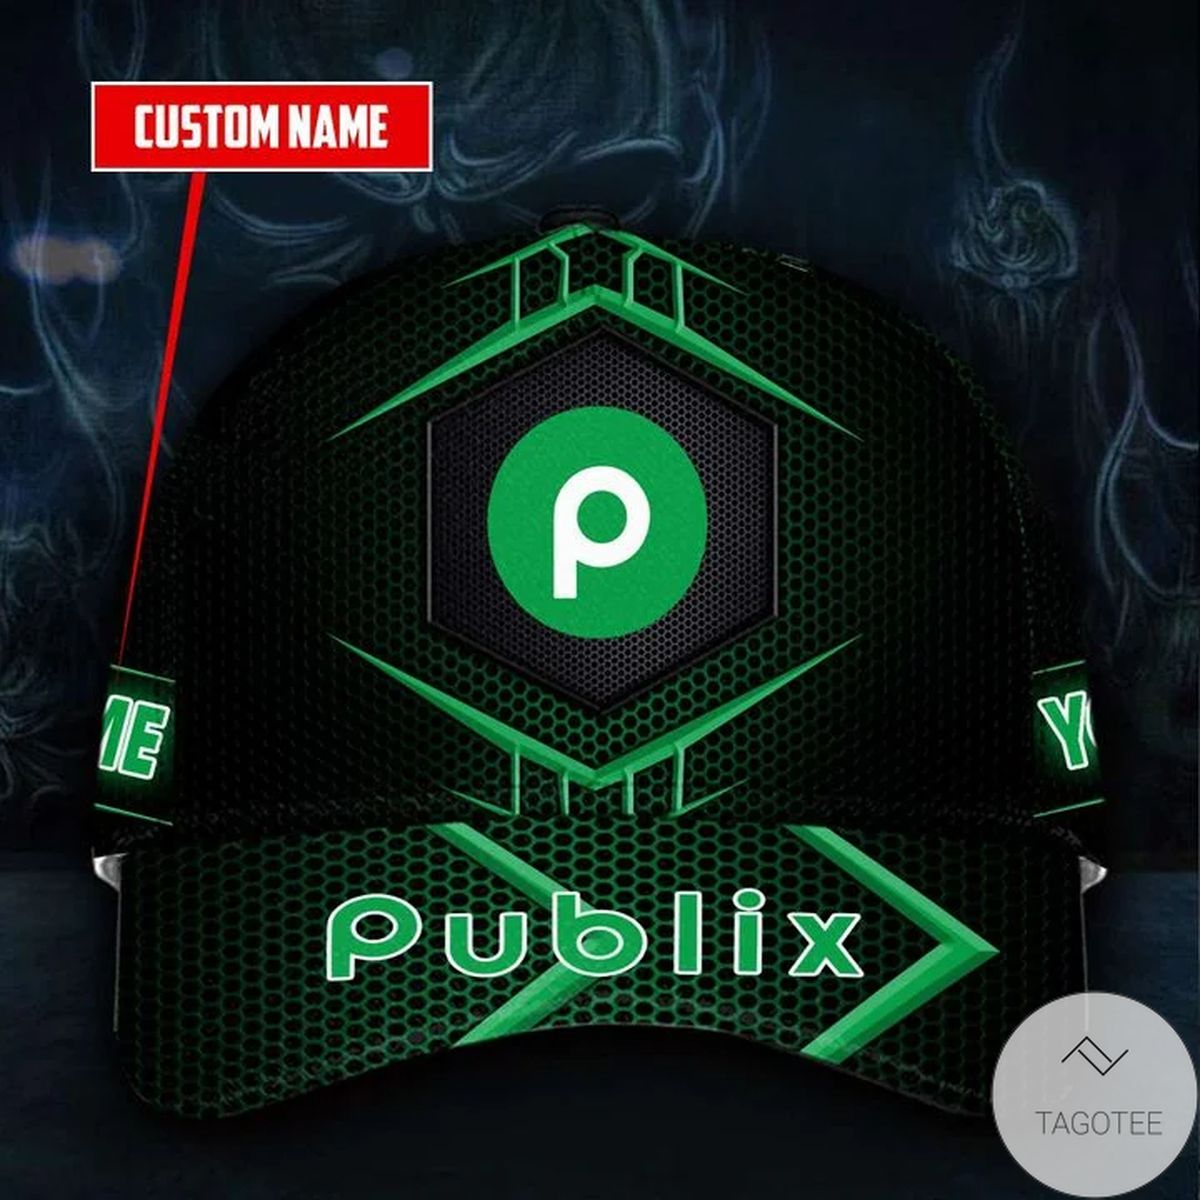 Personalized Publix Cap